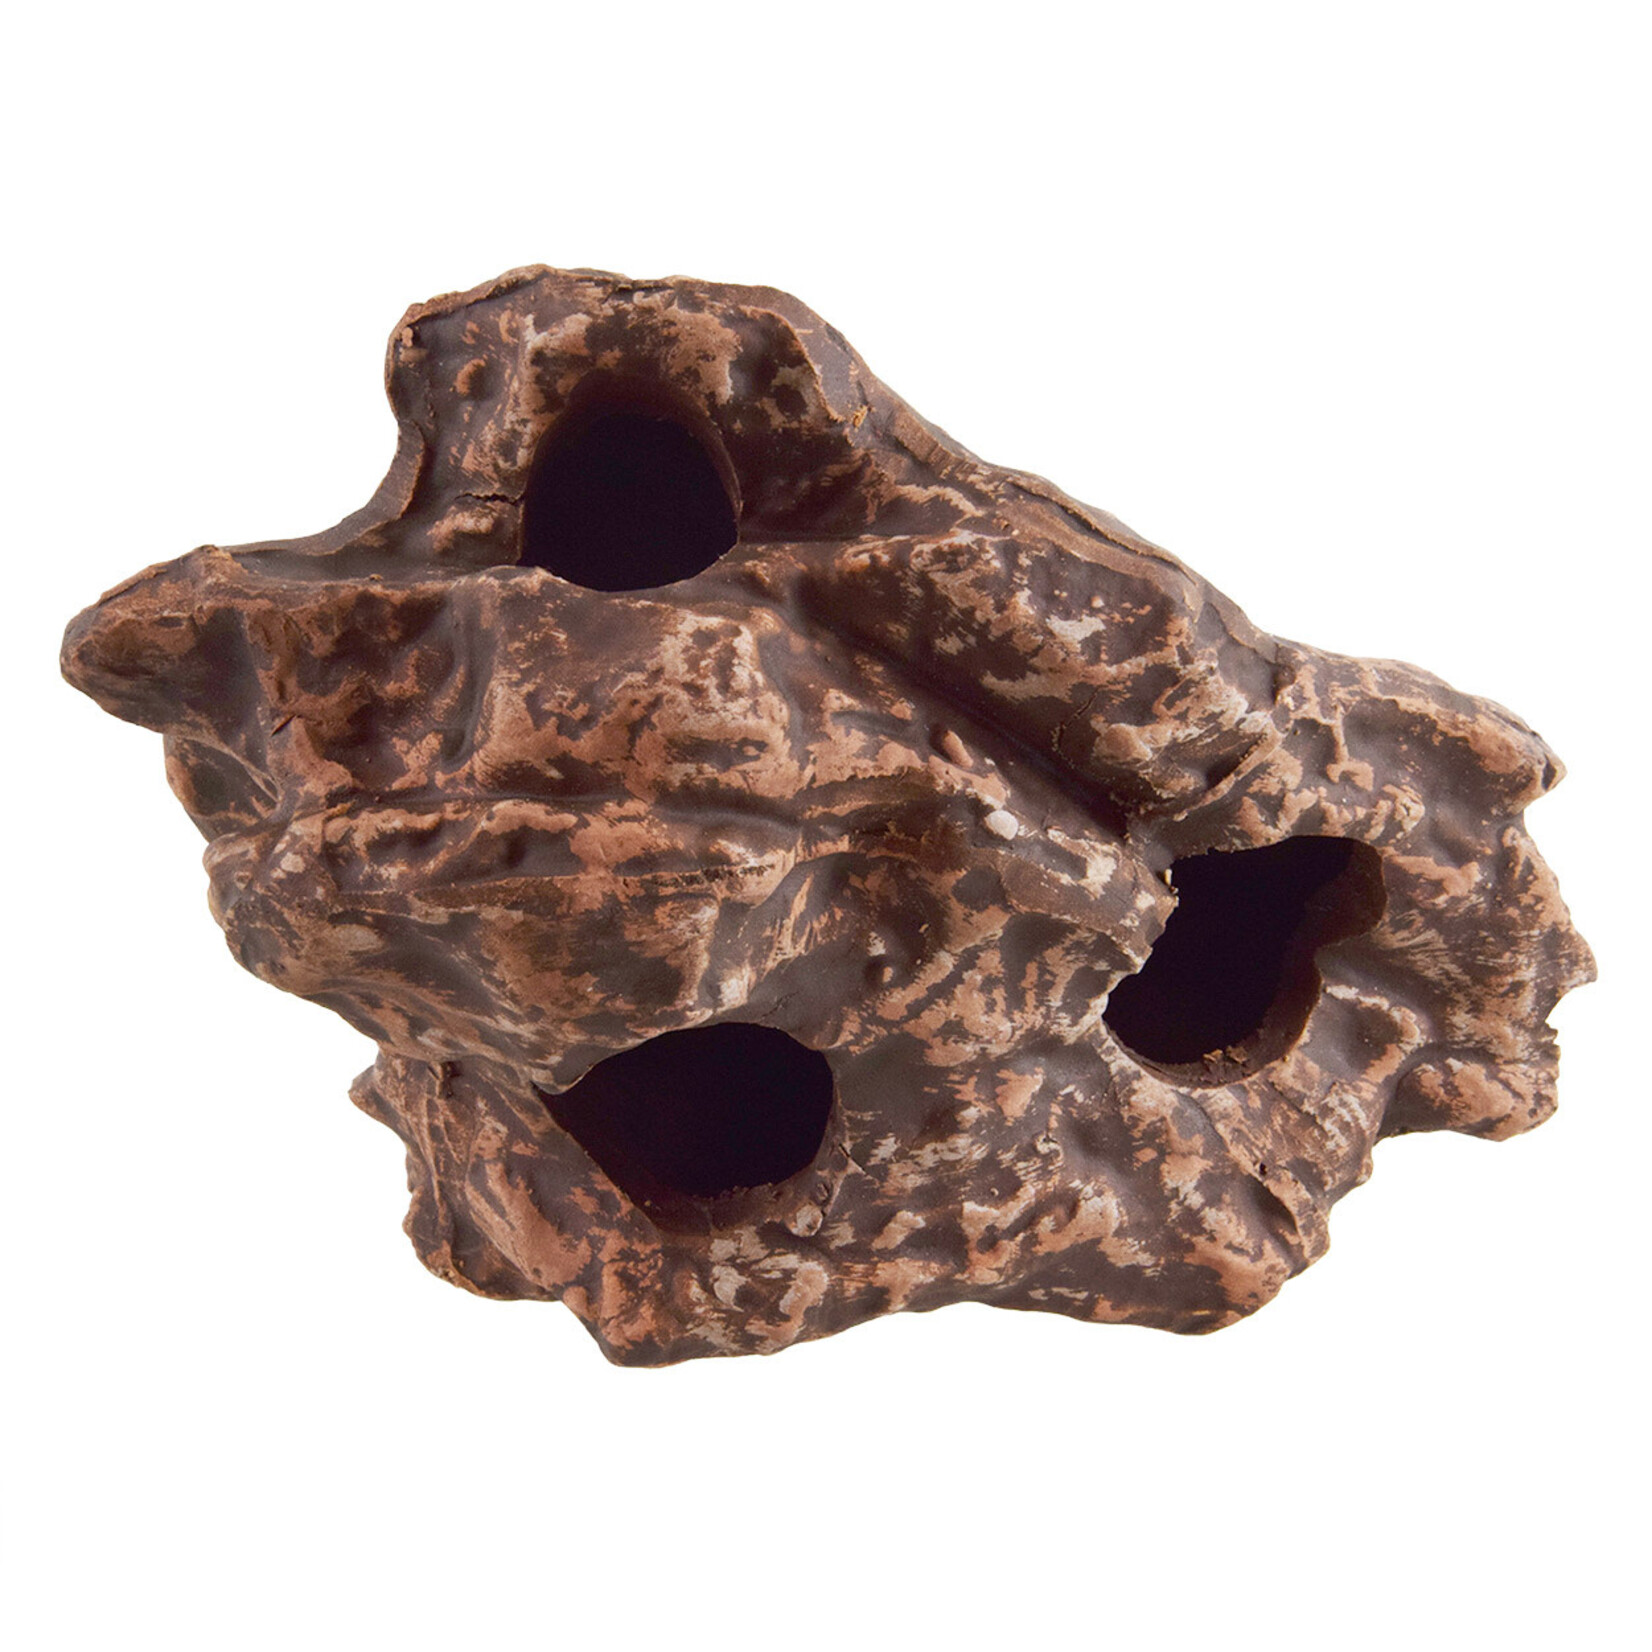 UNDERWATER TREASURES Underwater Treasures Ceramic Hollow Rock - Brown - Large